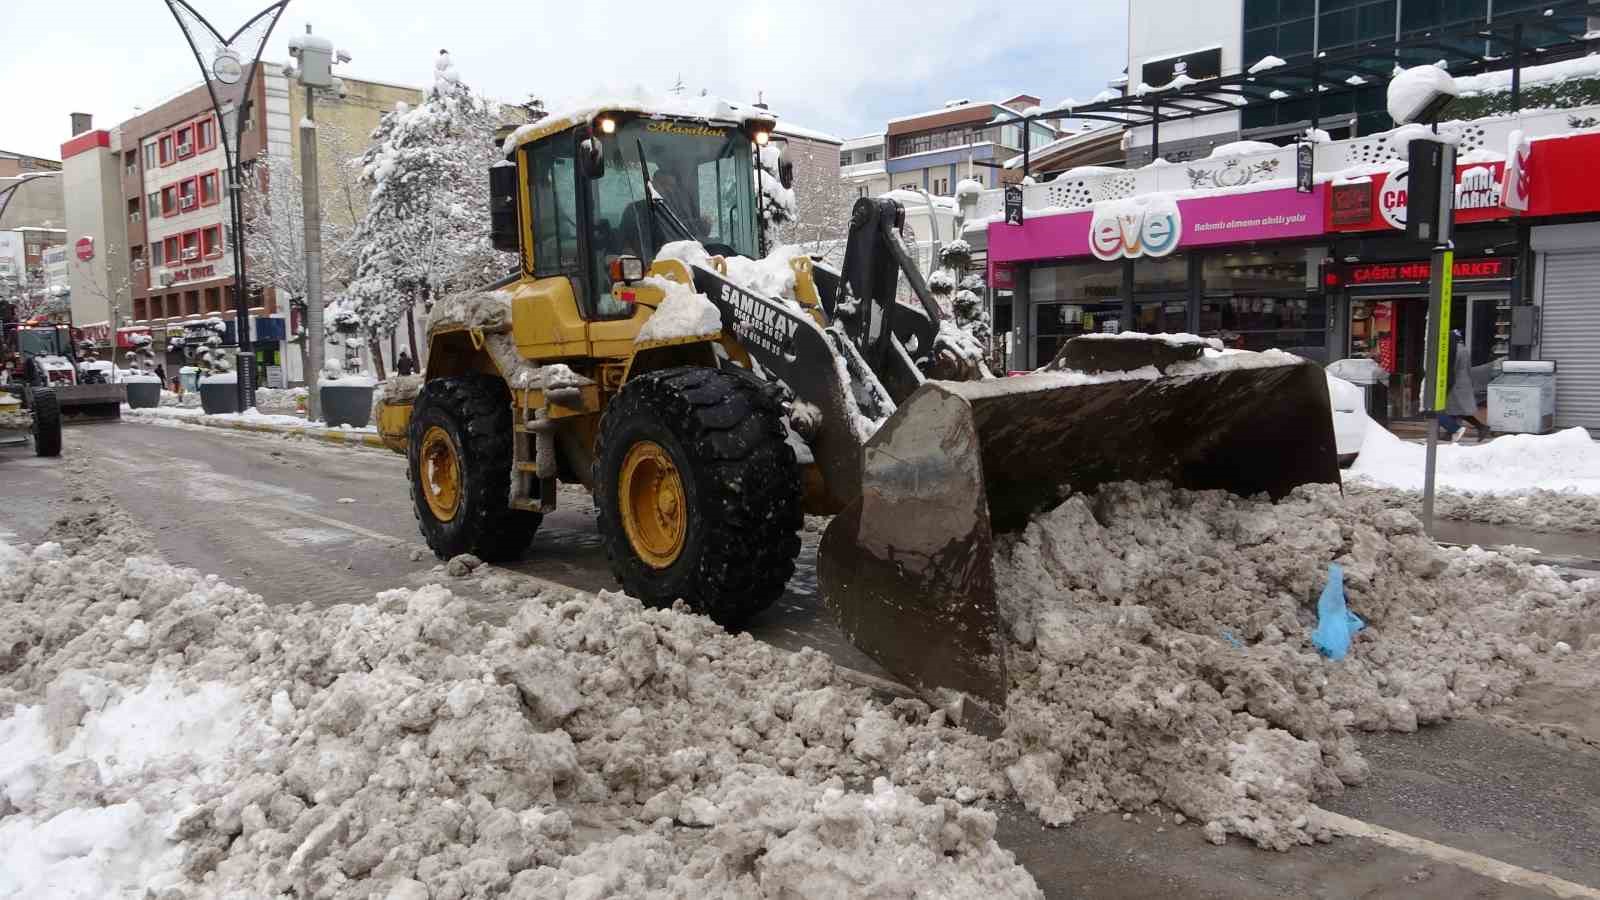 Van’da 83 yerleşim yerinin yolu kardan kapandı